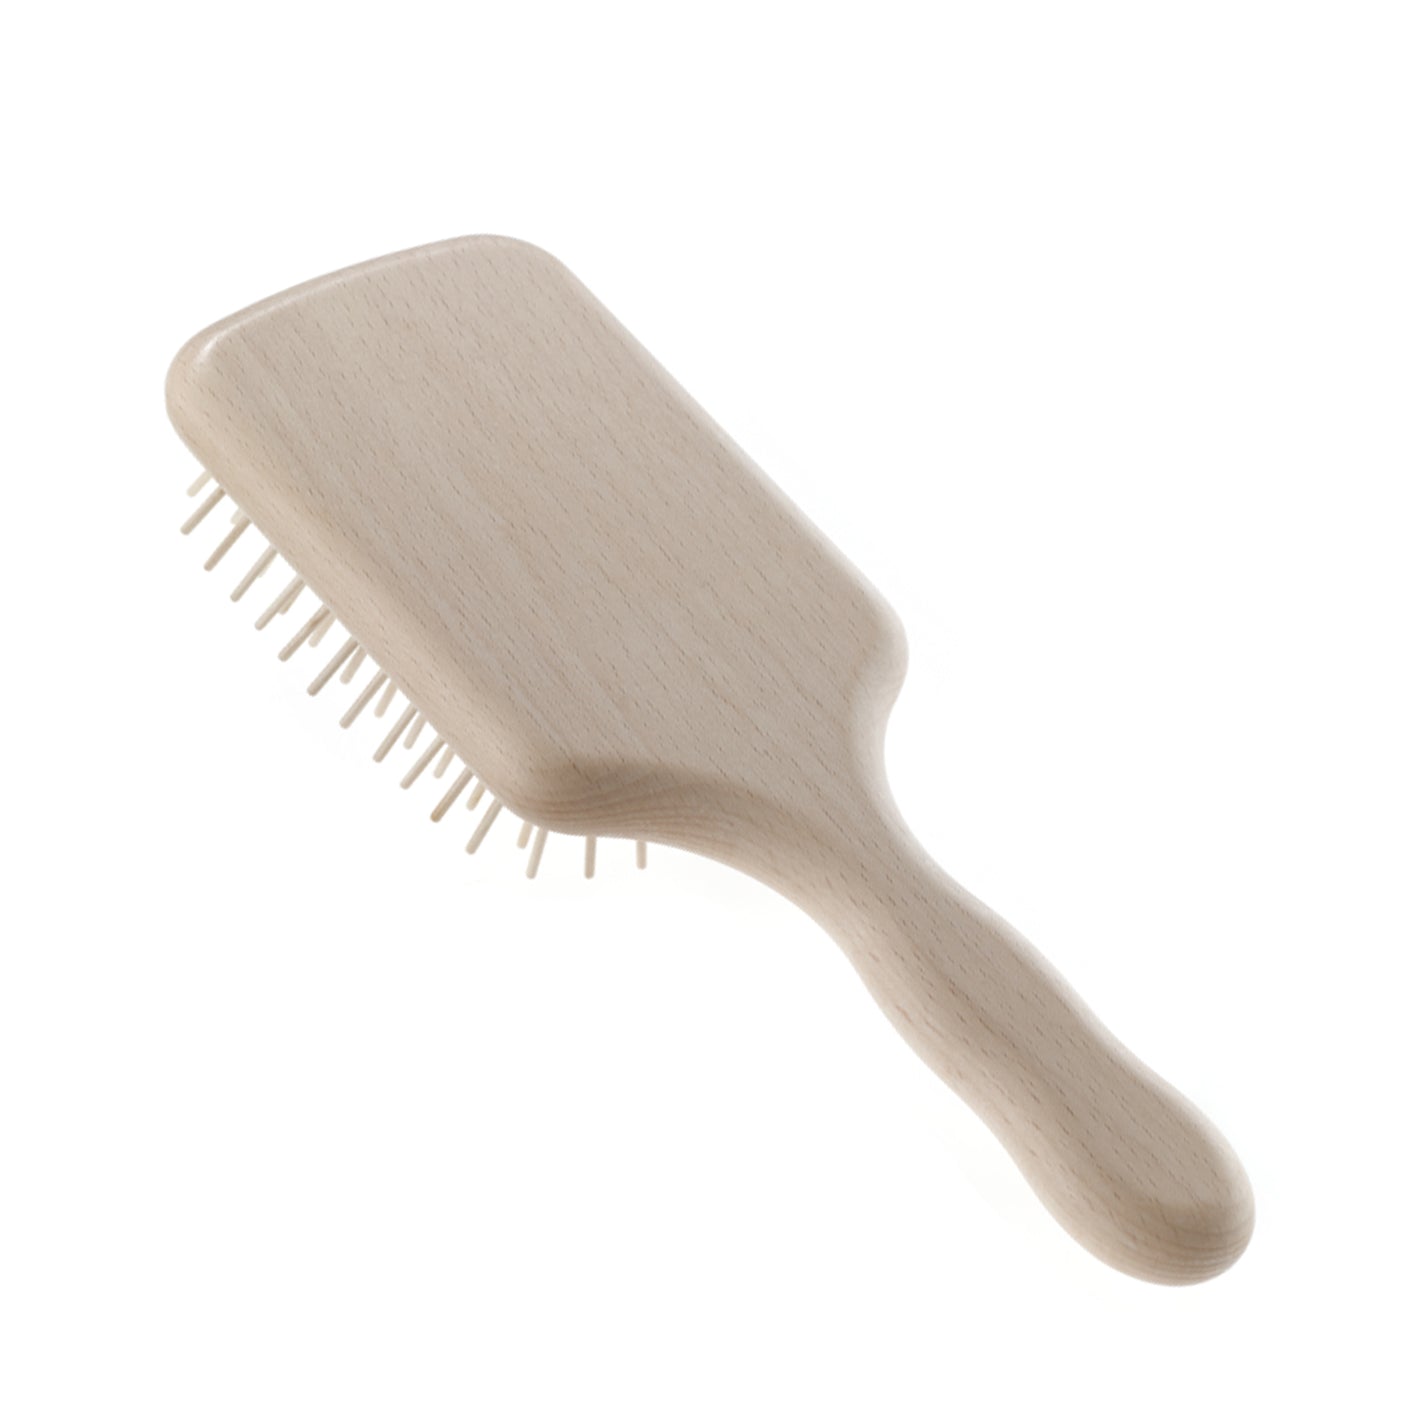 Acca Kappa Natura Paddle Hair Brush with Wooden Pins